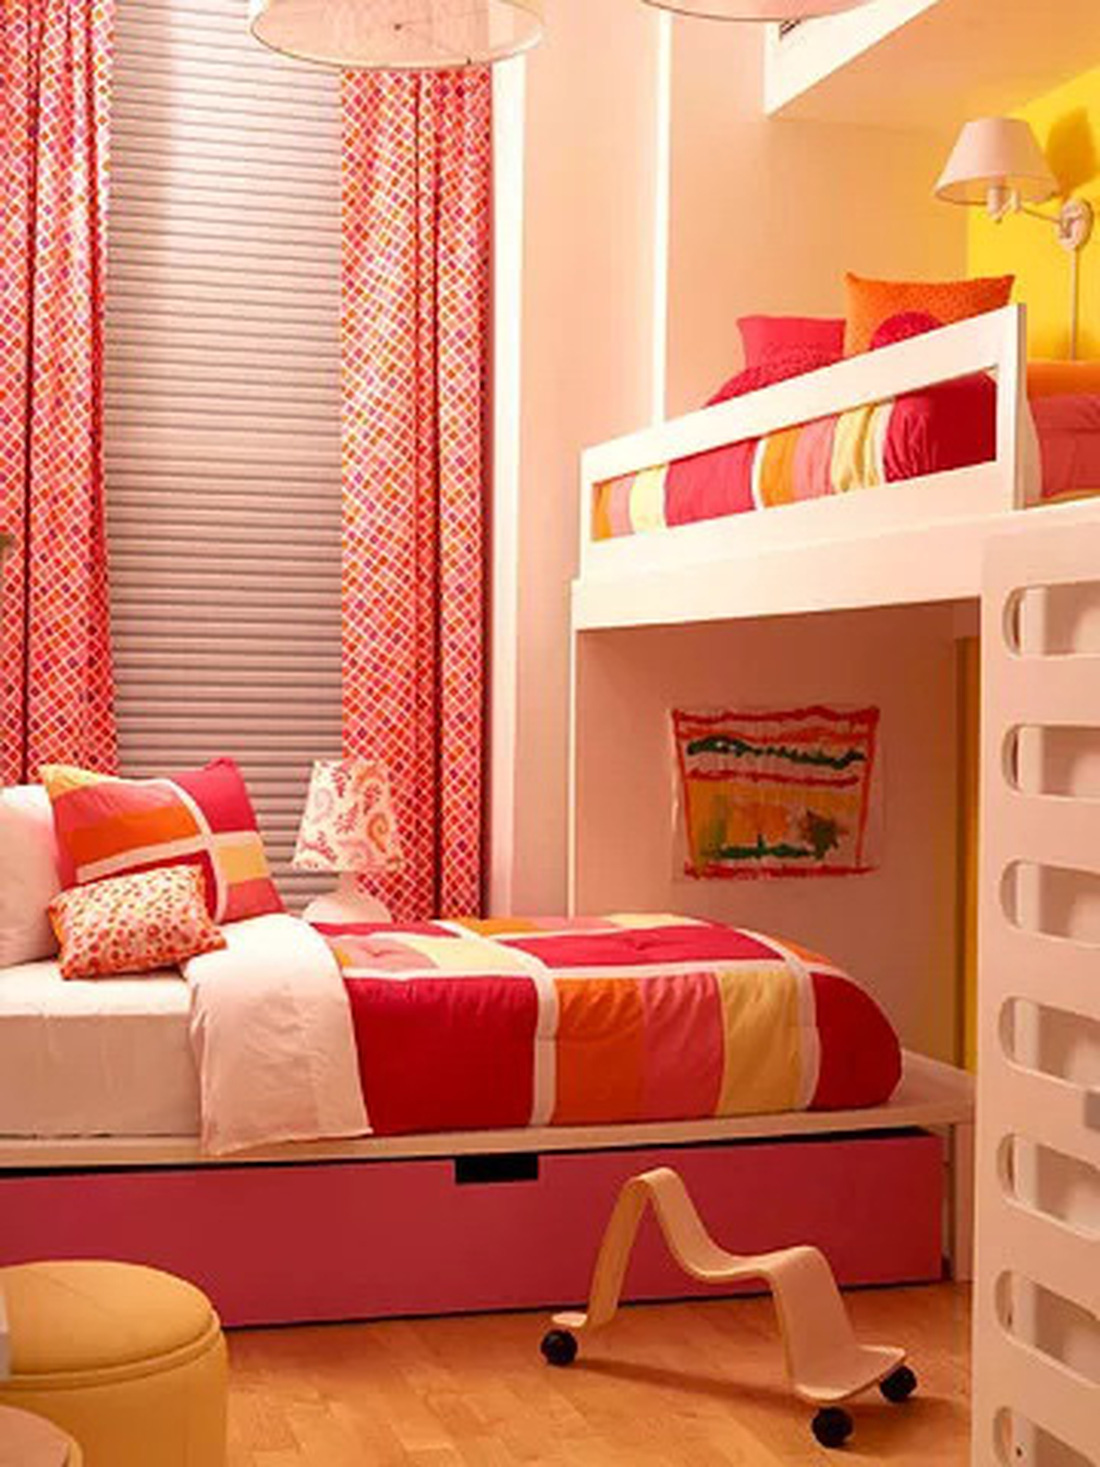 Nếu định chọn giường tầng làm giường chính, hãy đảm bảo rằng tất cả những vật dụng cần thiết hằng ngày đều được trang bị đầy đủ - Ảnh: BHG